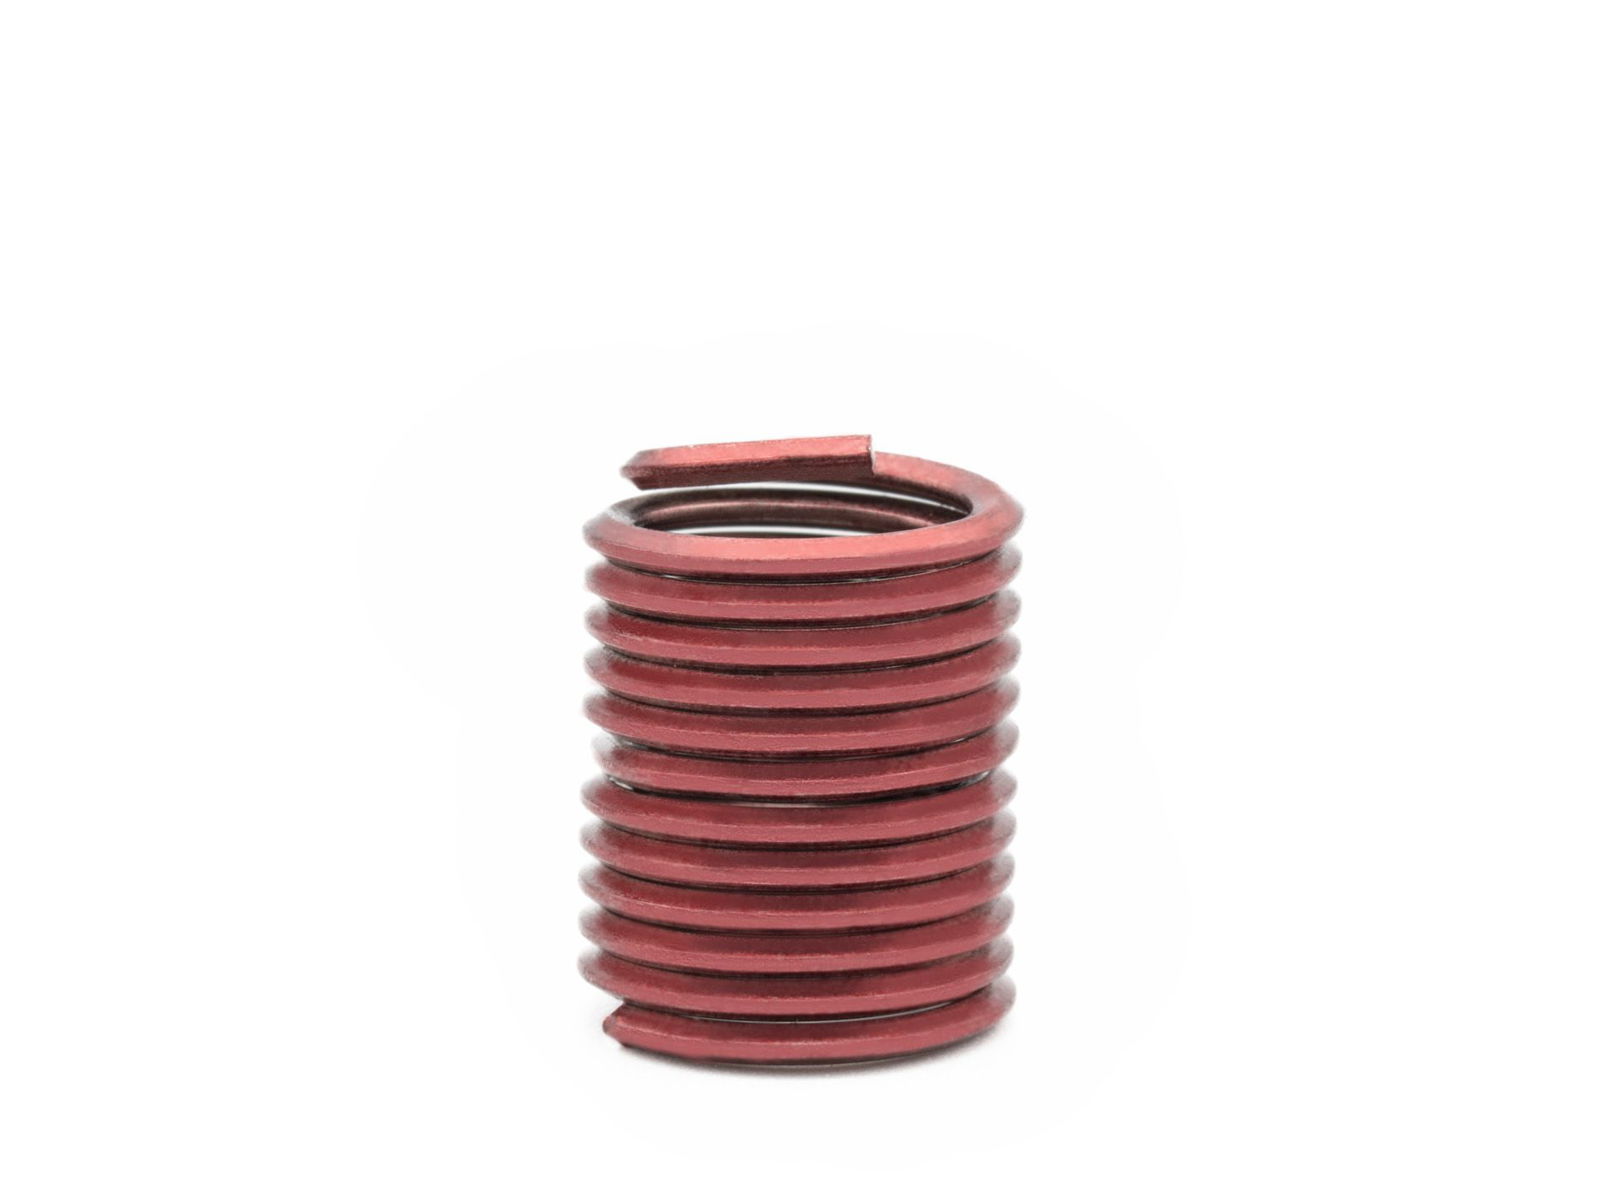 BaerCoil Wire Thread Inserts UNC No. 4 x 40 - 2.0 D (5.69 mm) - screw grip (screw locking) - 100 pcs.